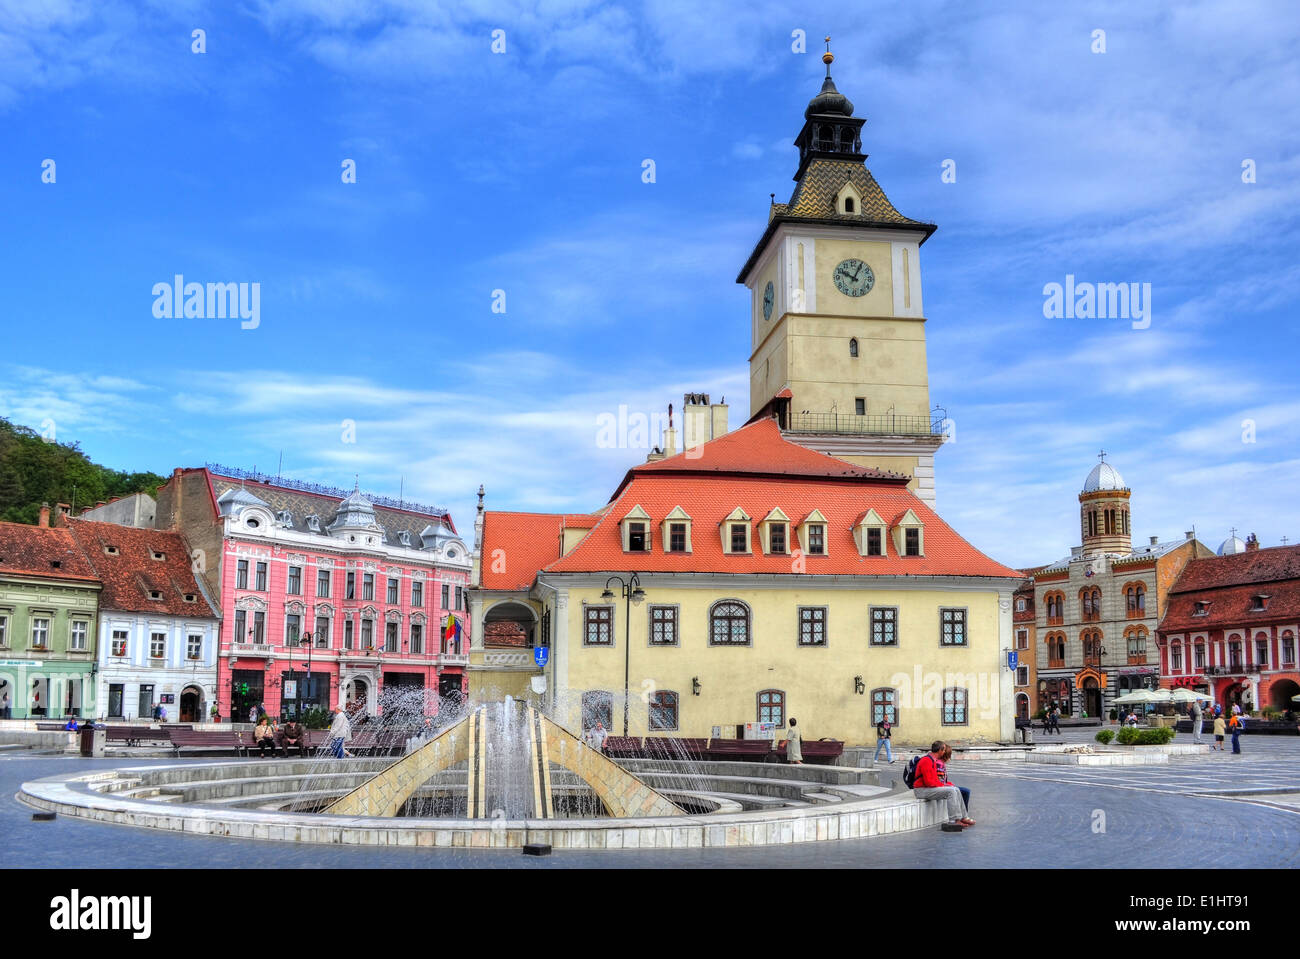 Council Square in Brasov city, Piata sfatului, Romania Stock Photo